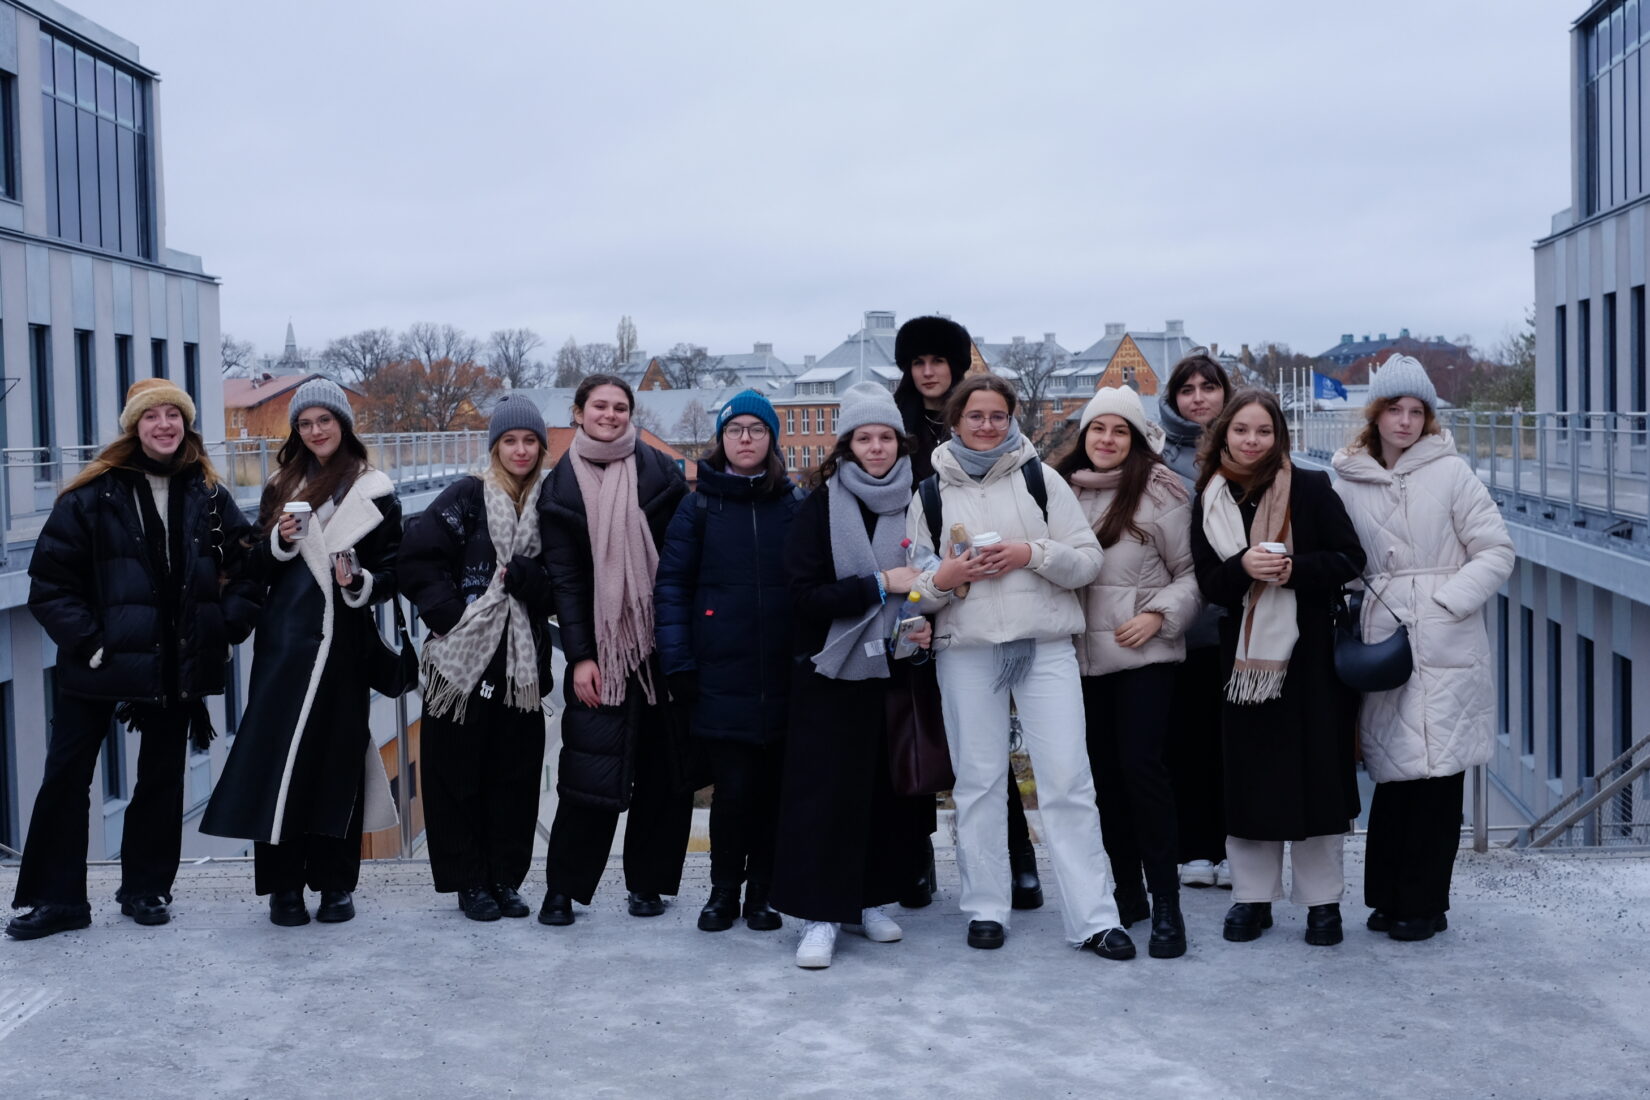 Svensksttudenter från Lviv ställer upp sig för fotografering utomhus i varma vinterkläder.